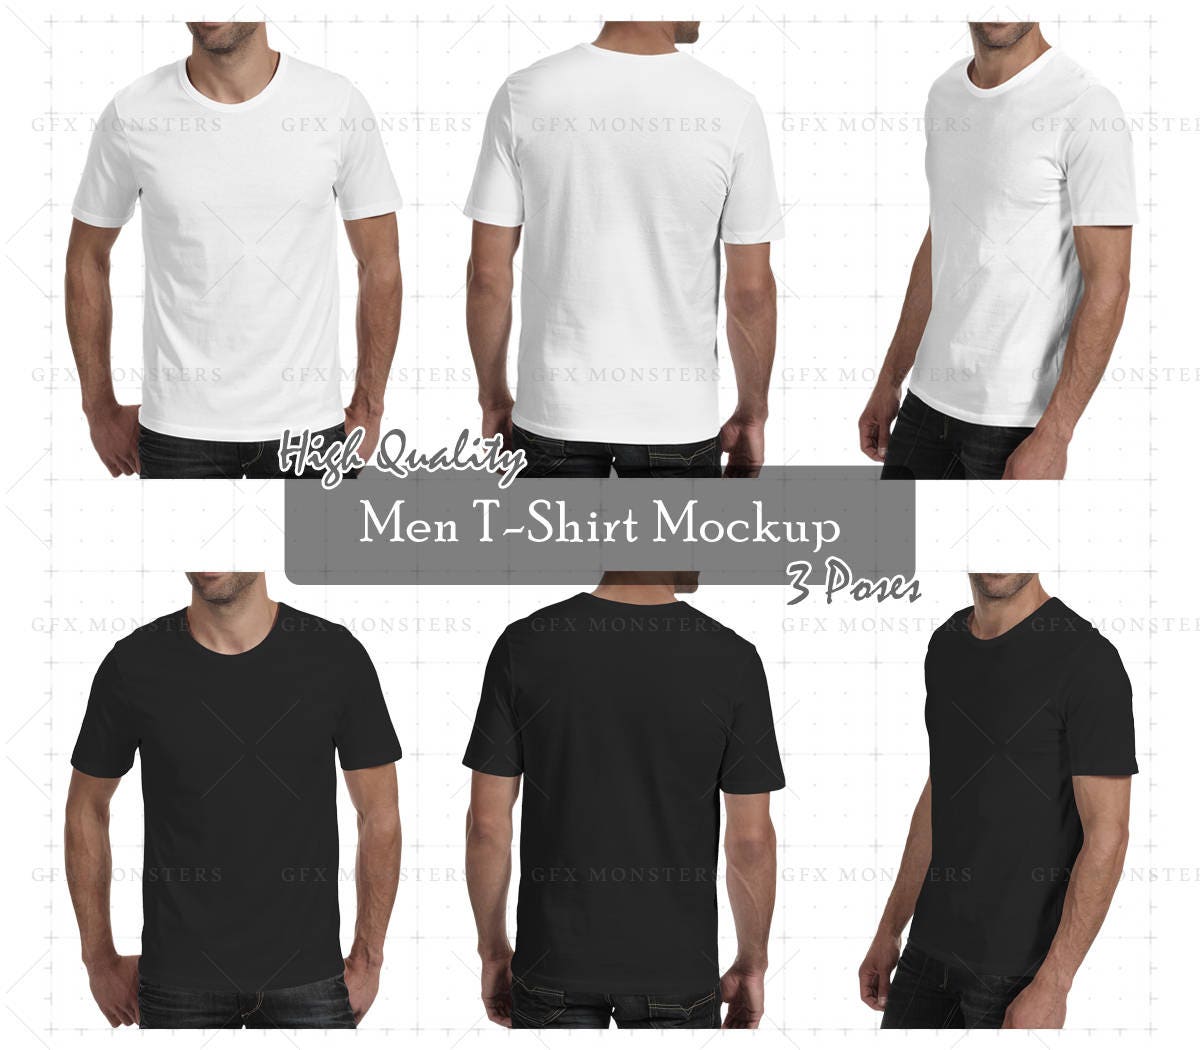 Men Tshirt Mockup PNG / PSD Front Back Perspective